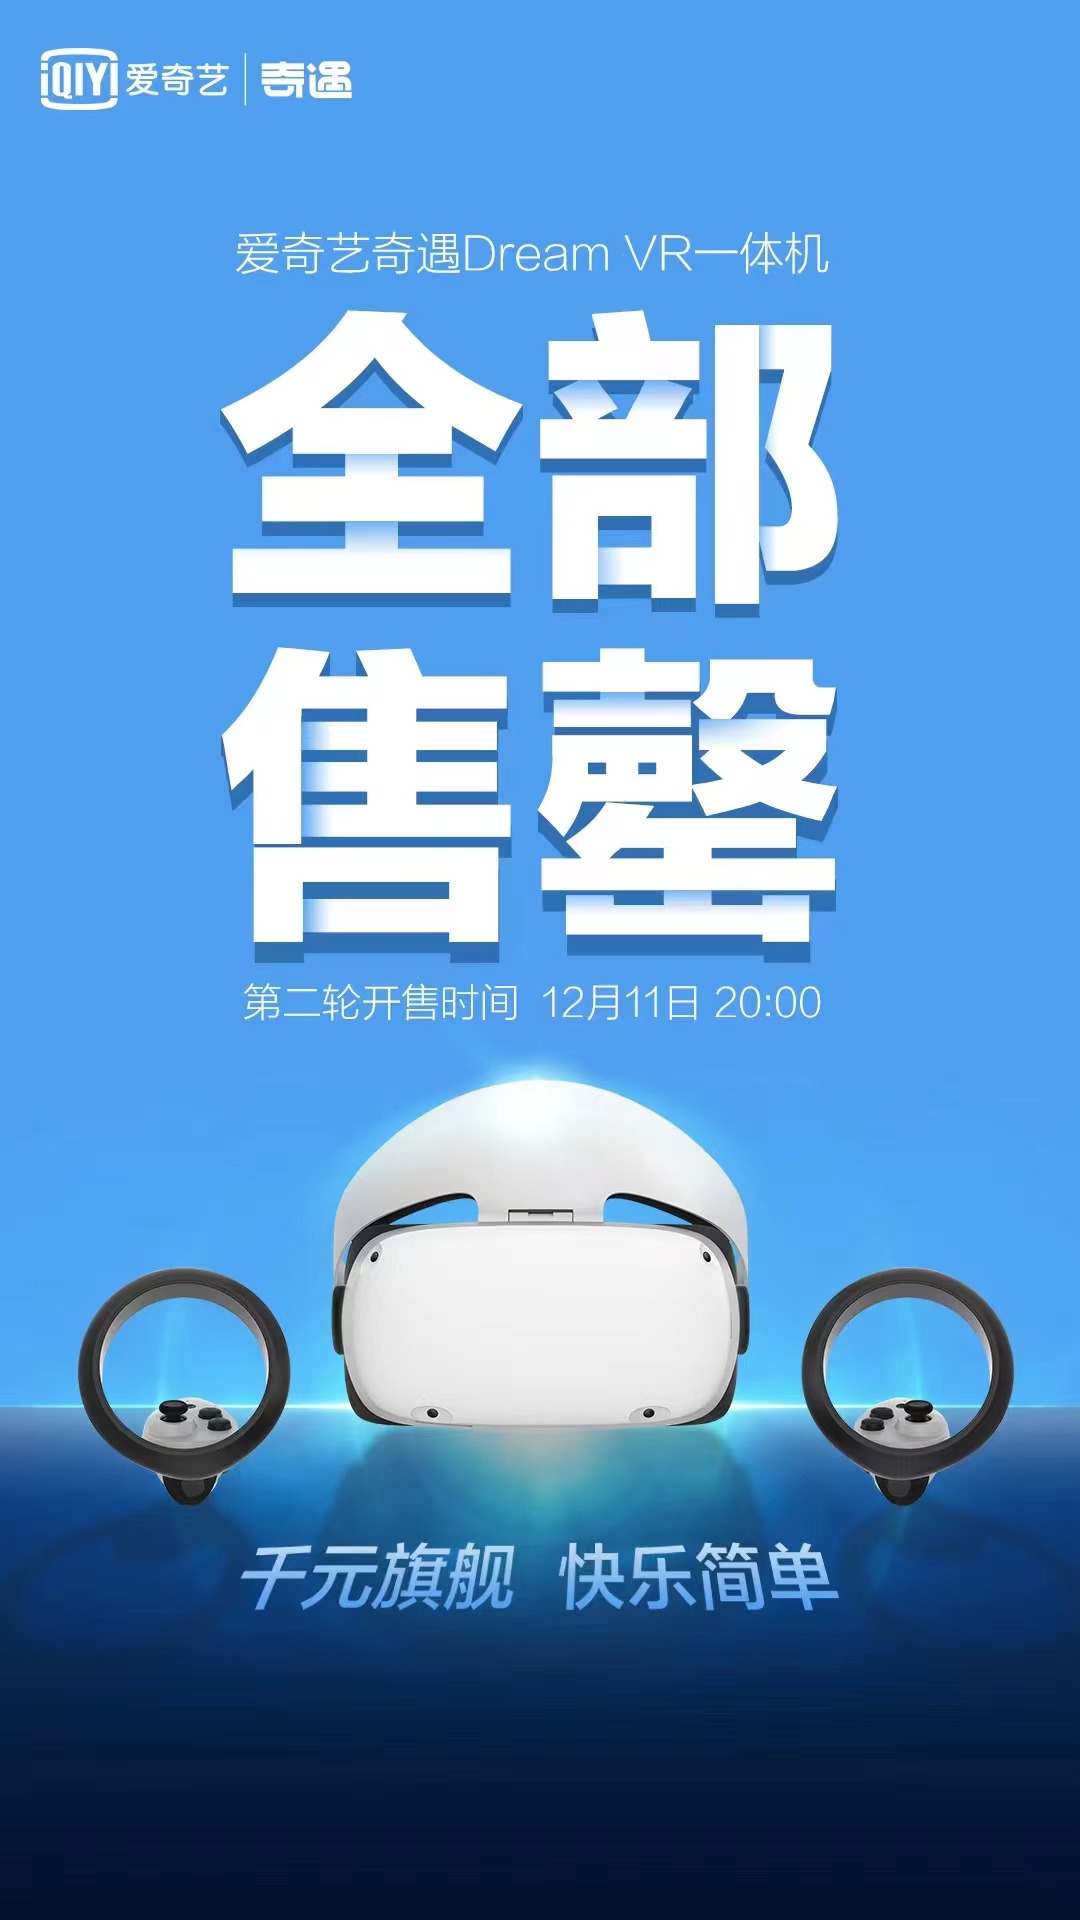 爱奇艺奇遇Dream一体机首发即售罄,攻占国内VR消费市场